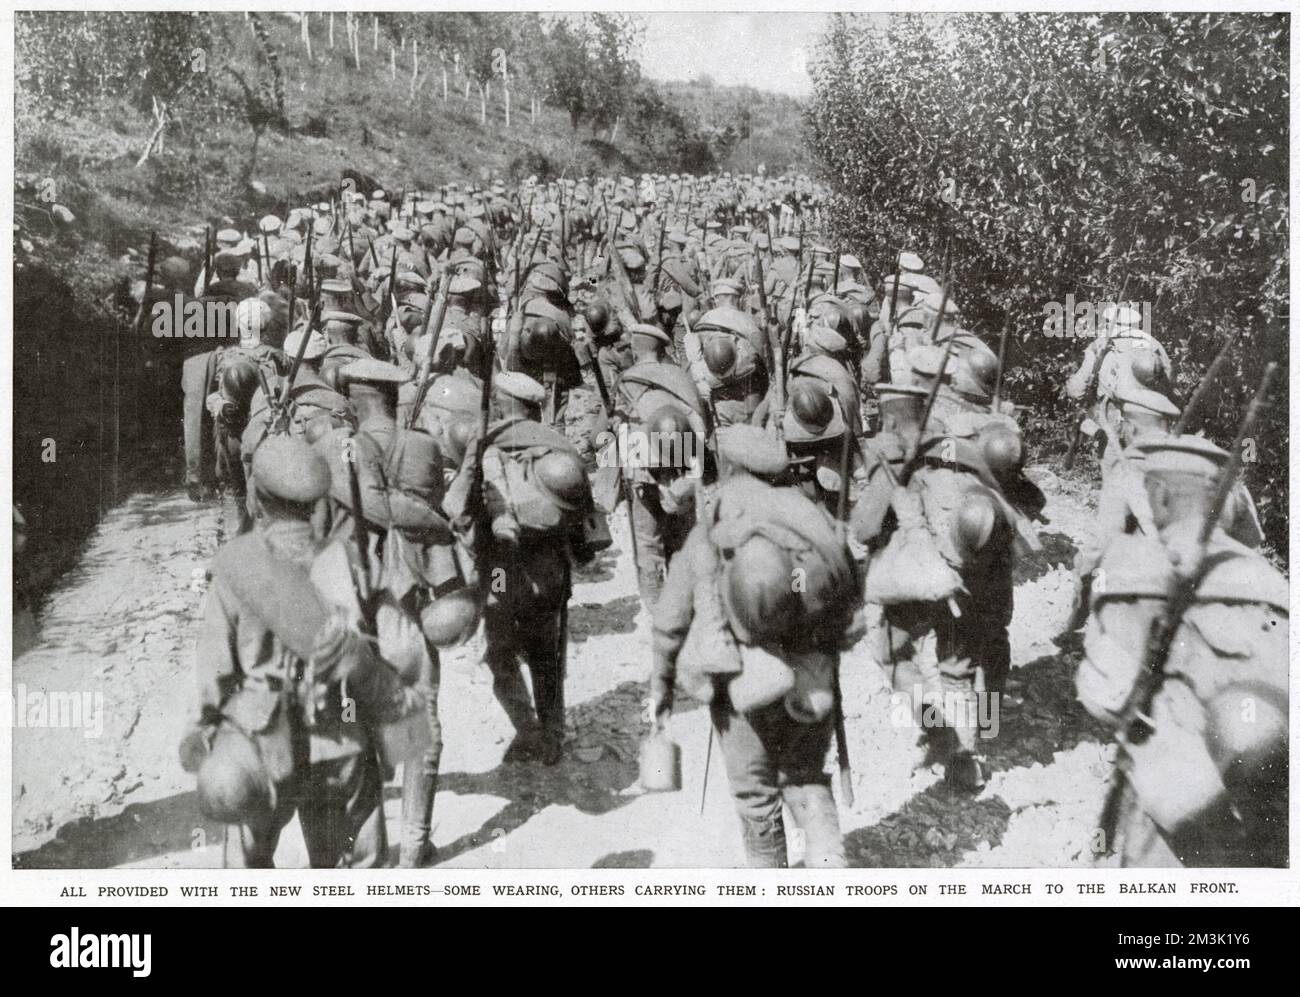 Un gran numero di fanteria russa, dotata solo di caschi in acciaio introdotti di recente, viene mostrato marciando verso il fronte balcanico. Si riferisce che i soldati sono arrivati all'accampamento alleato a Salonicco, in Grecia, il 9th ottobre 1916. Foto Stock